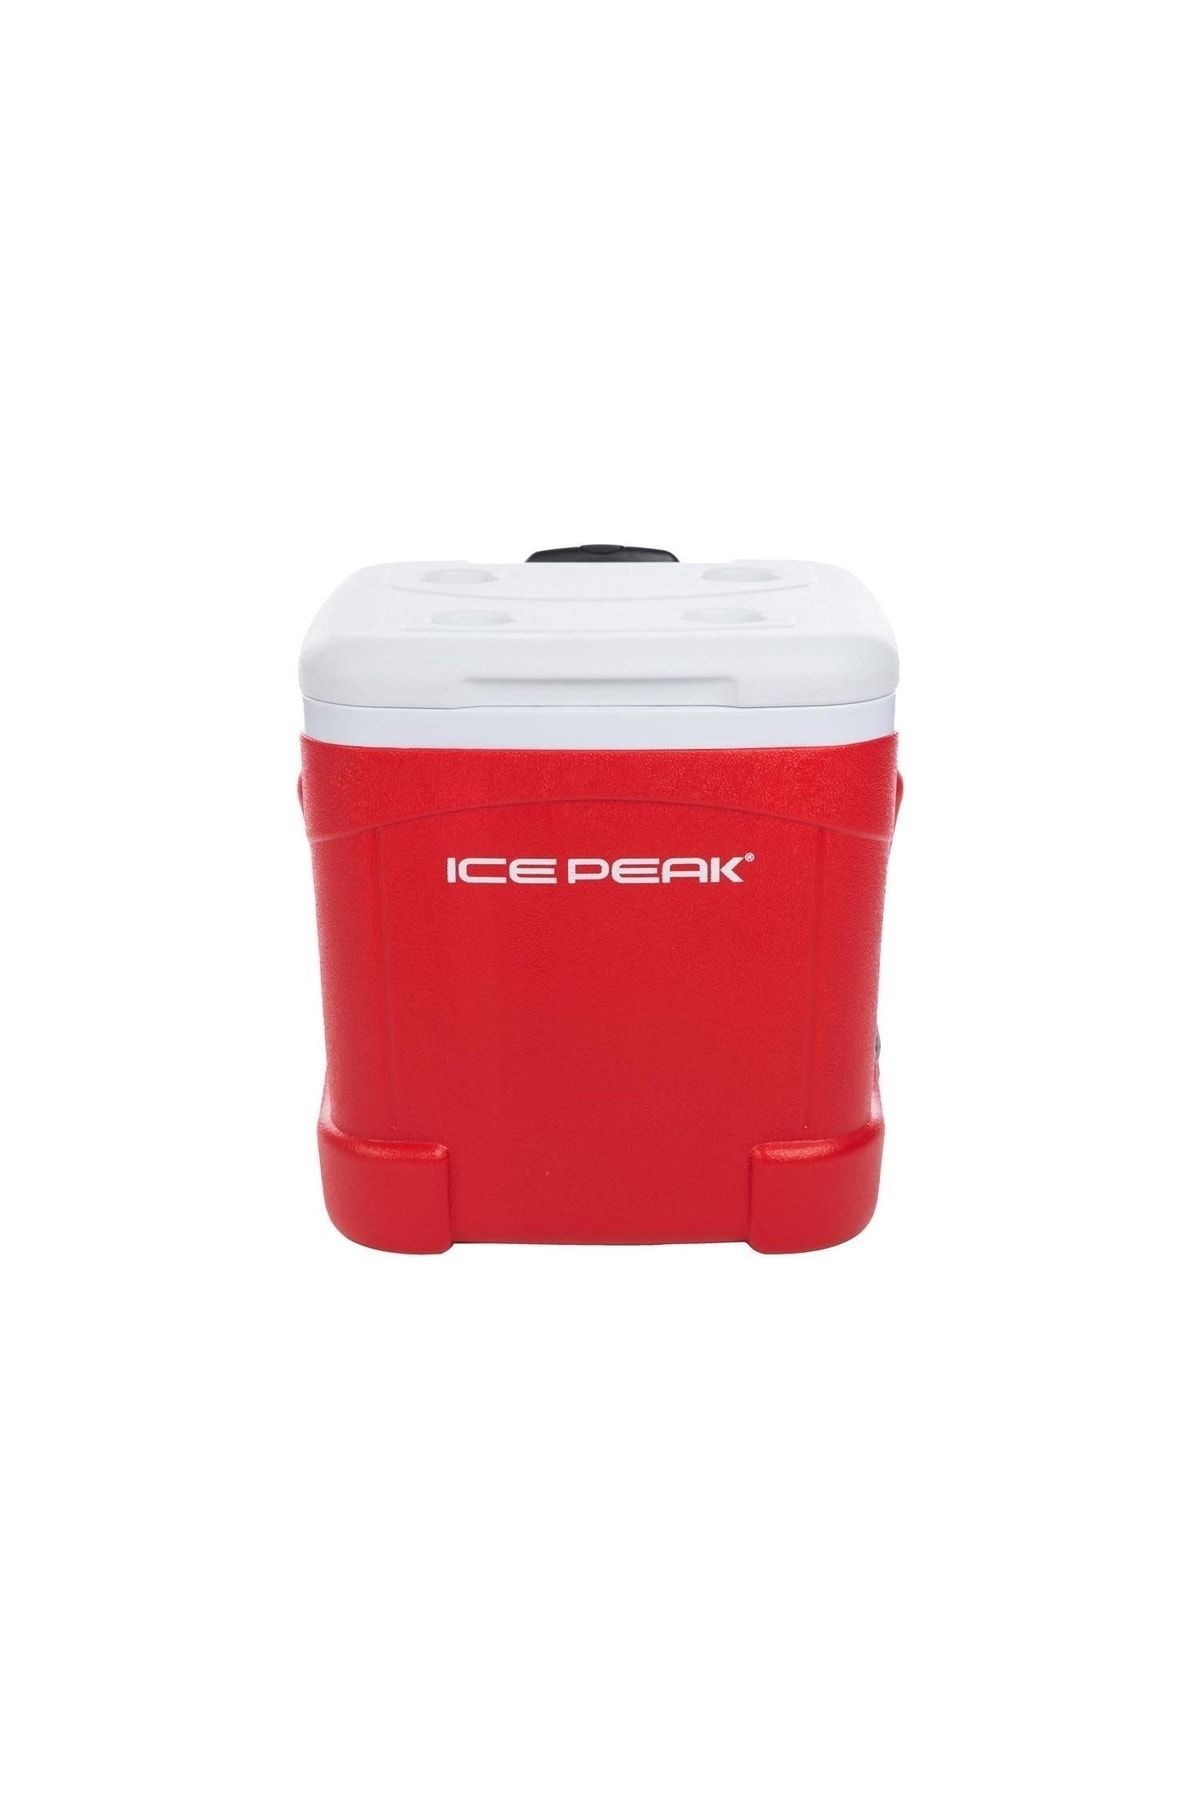 Icepeak 55 Litre Tekerlekli Kırmızı Buzluk